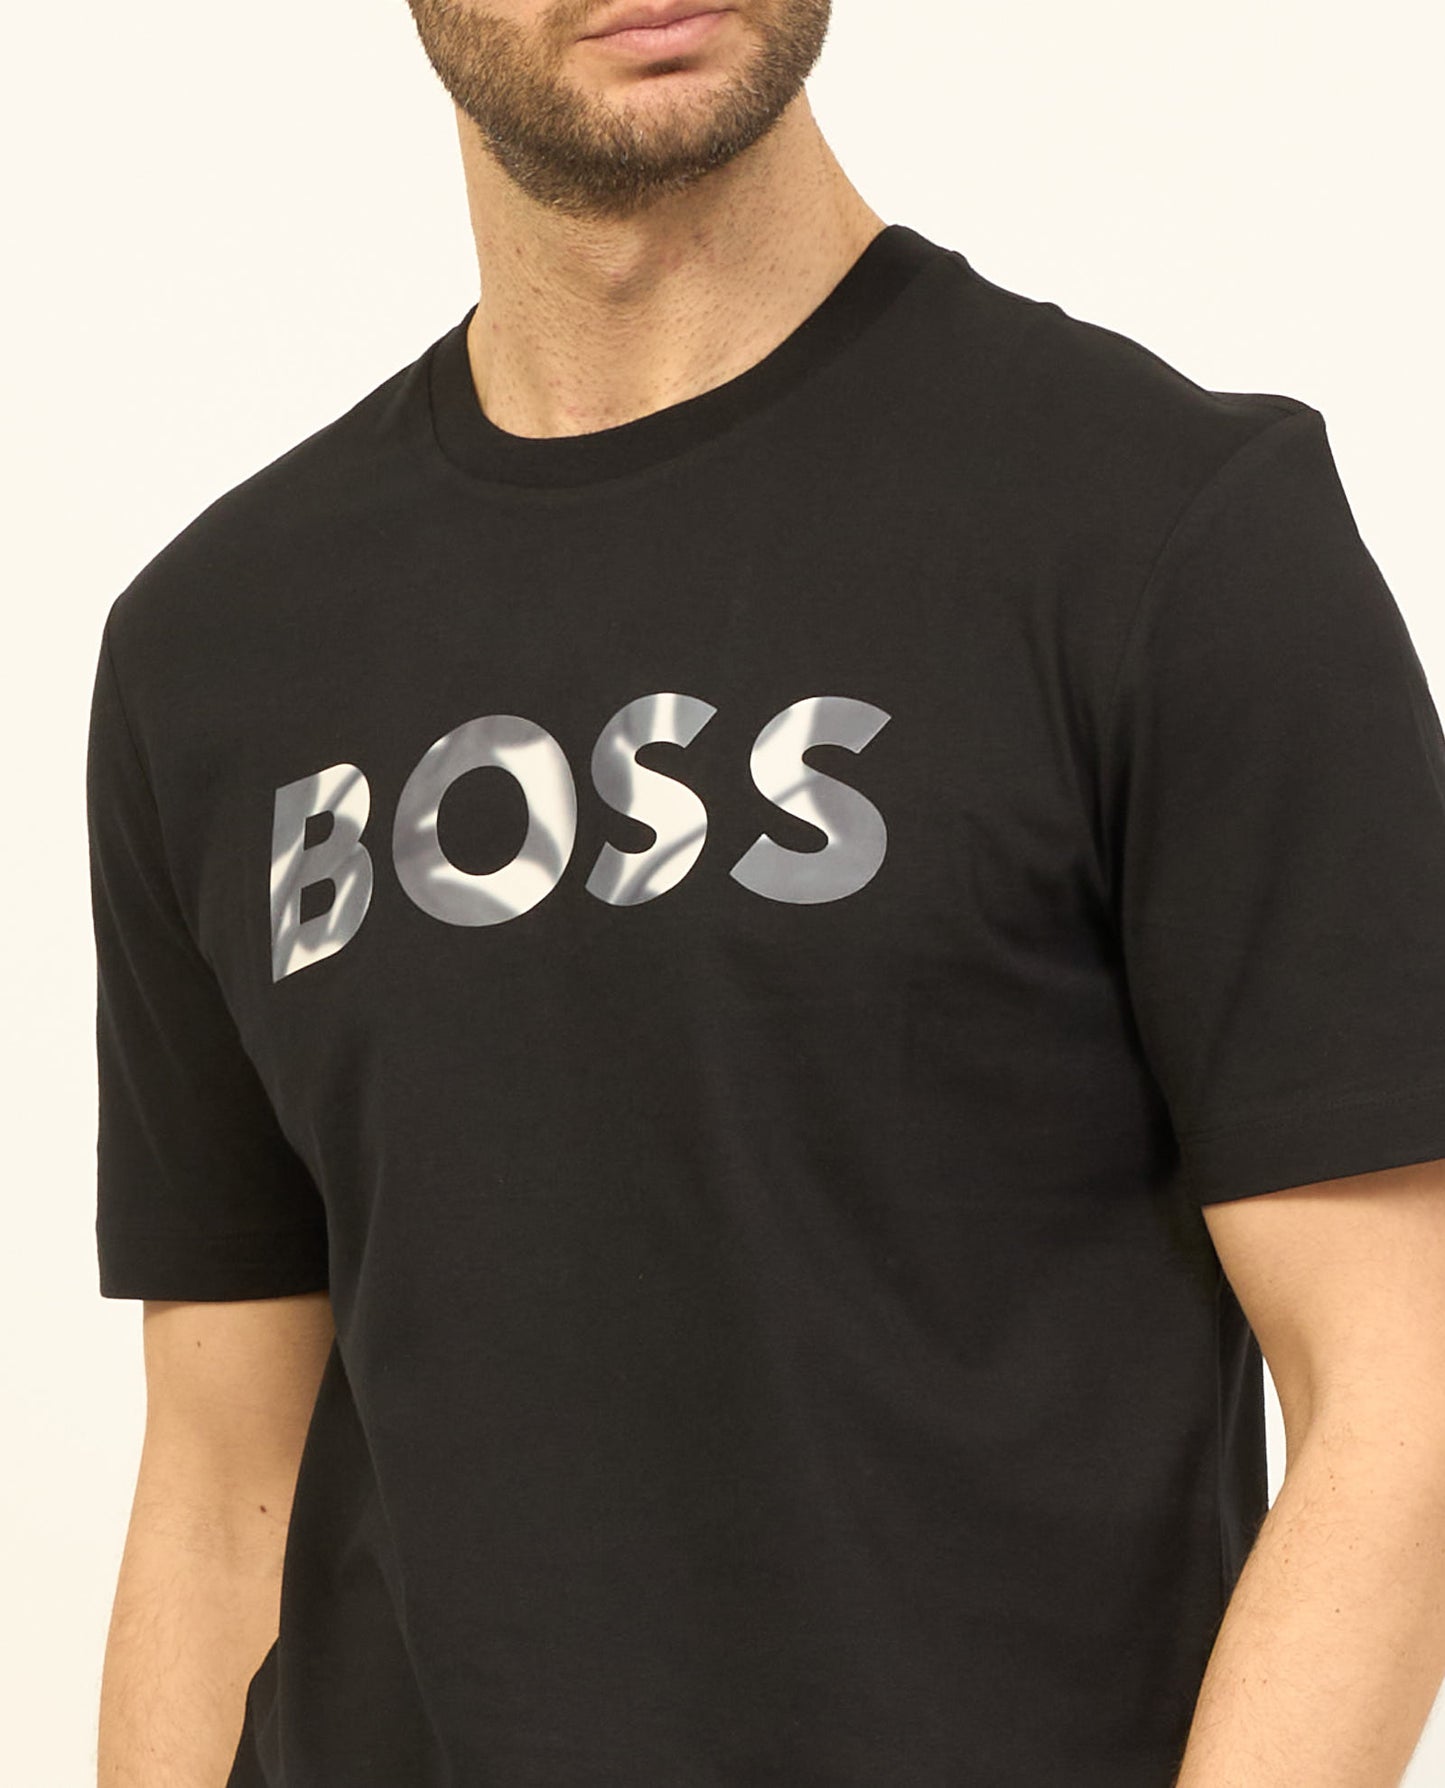 Hugo Boss Men's Thompson 15 Short Sleeve Crew Neck T-Shirt, Black